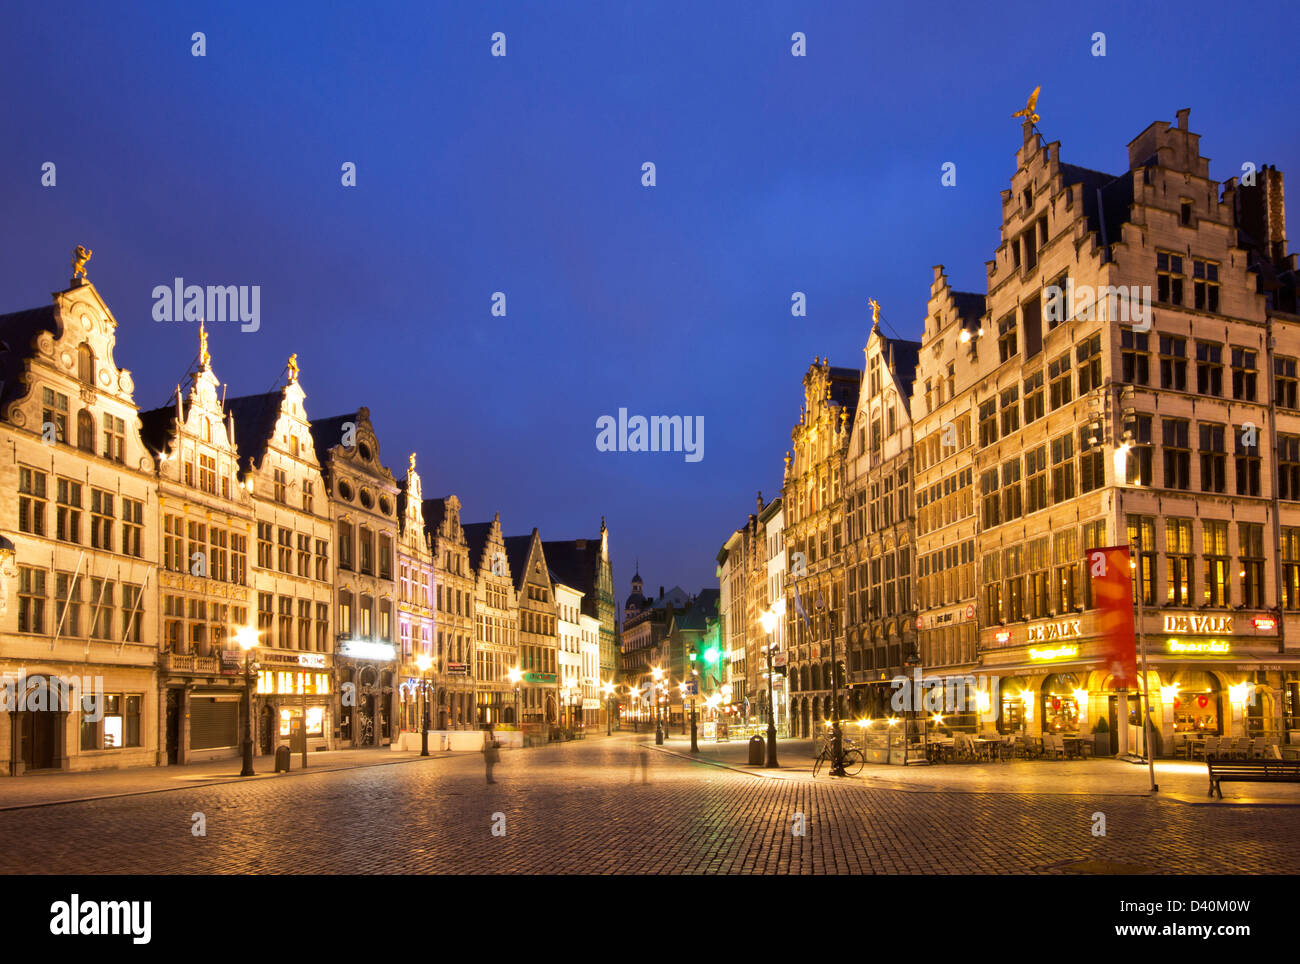 Antwerpen bei Nacht - Diamond Straße Gehweg umgeben von traditionellen alten Häusern. Stockfoto